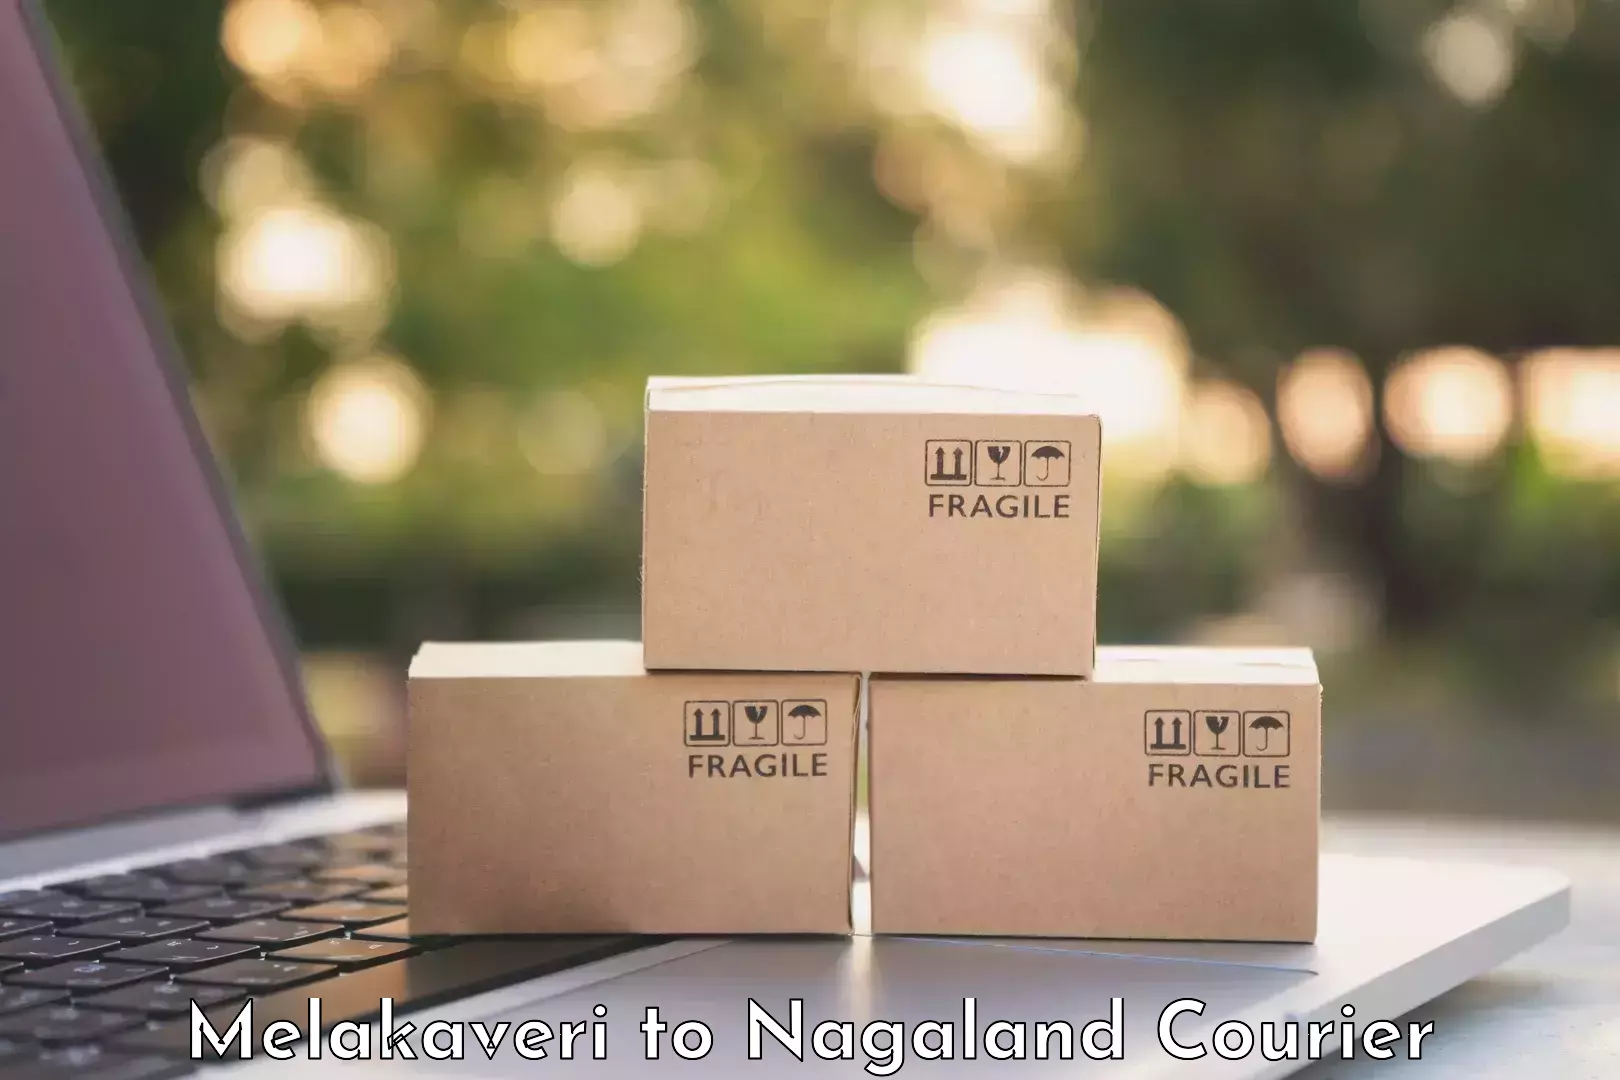 Luggage delivery optimization Melakaveri to NIT Nagaland